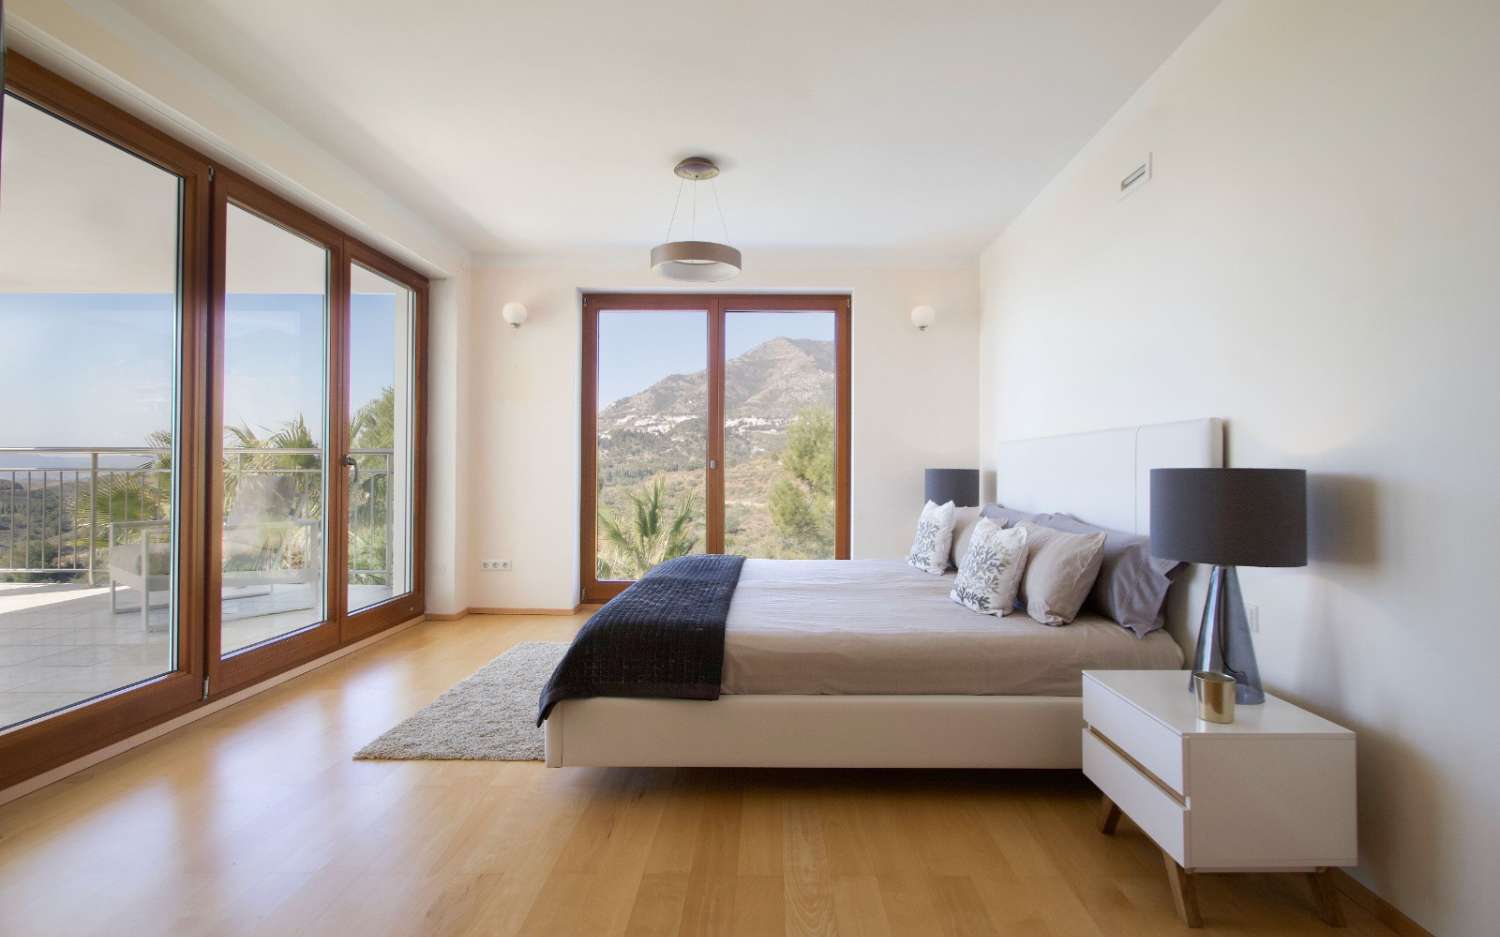 SPECTACULAIRE Villa te koop in urbanisatie van Mijas met panoramisch uitzicht